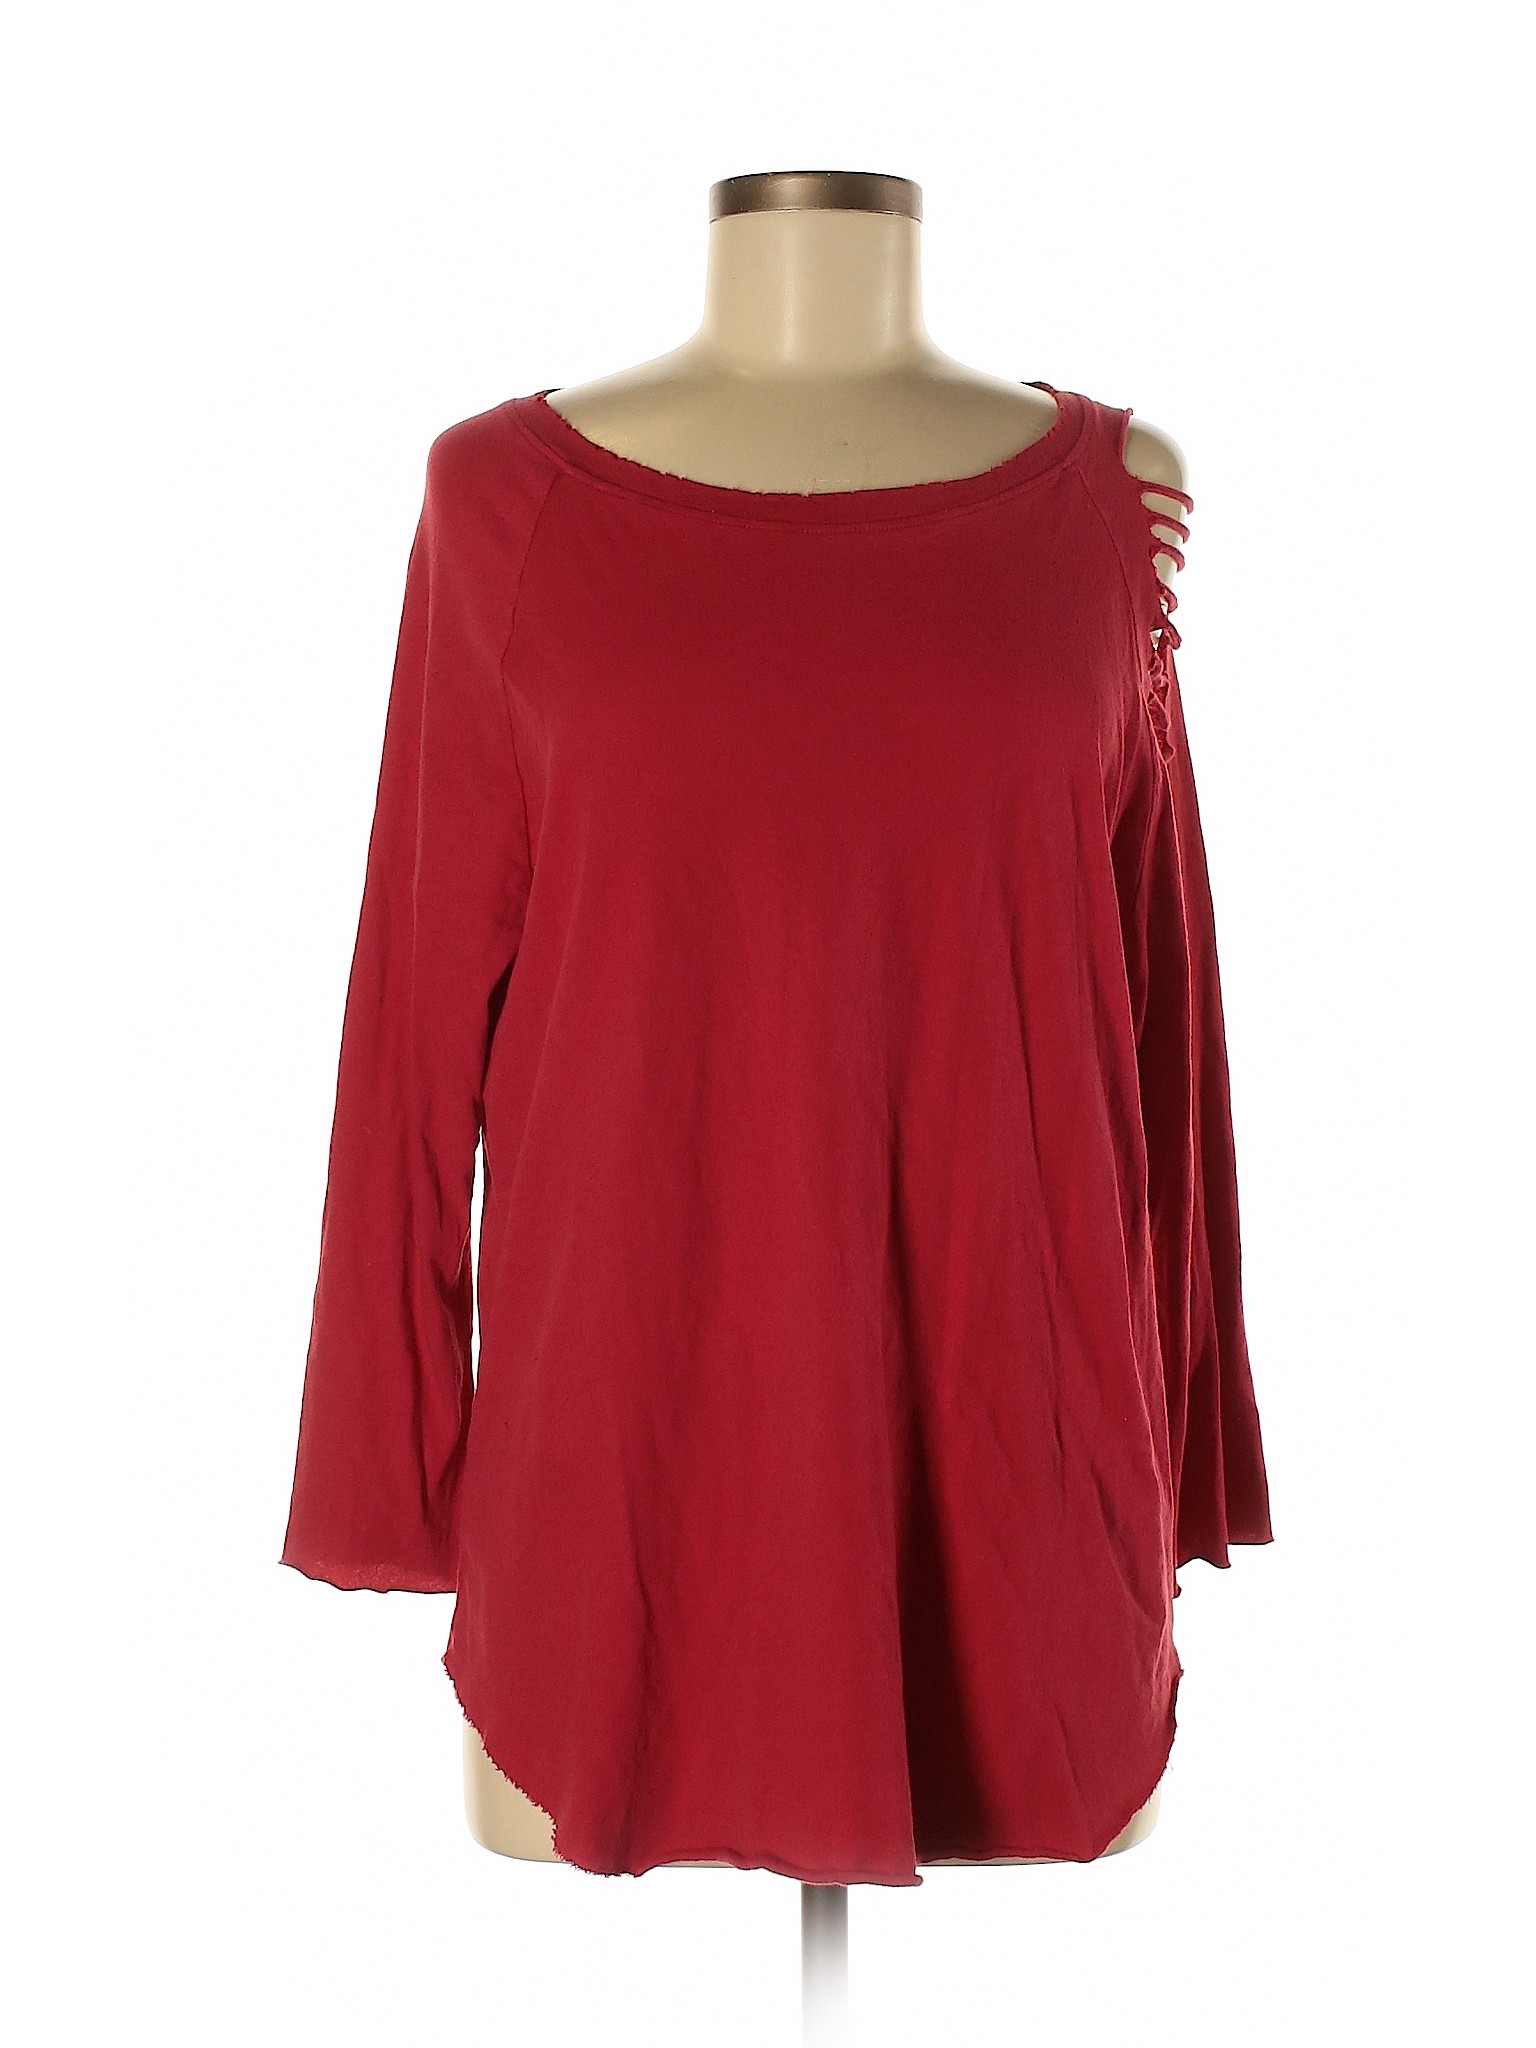 LA Made Women Red Long Sleeve Top M | eBay